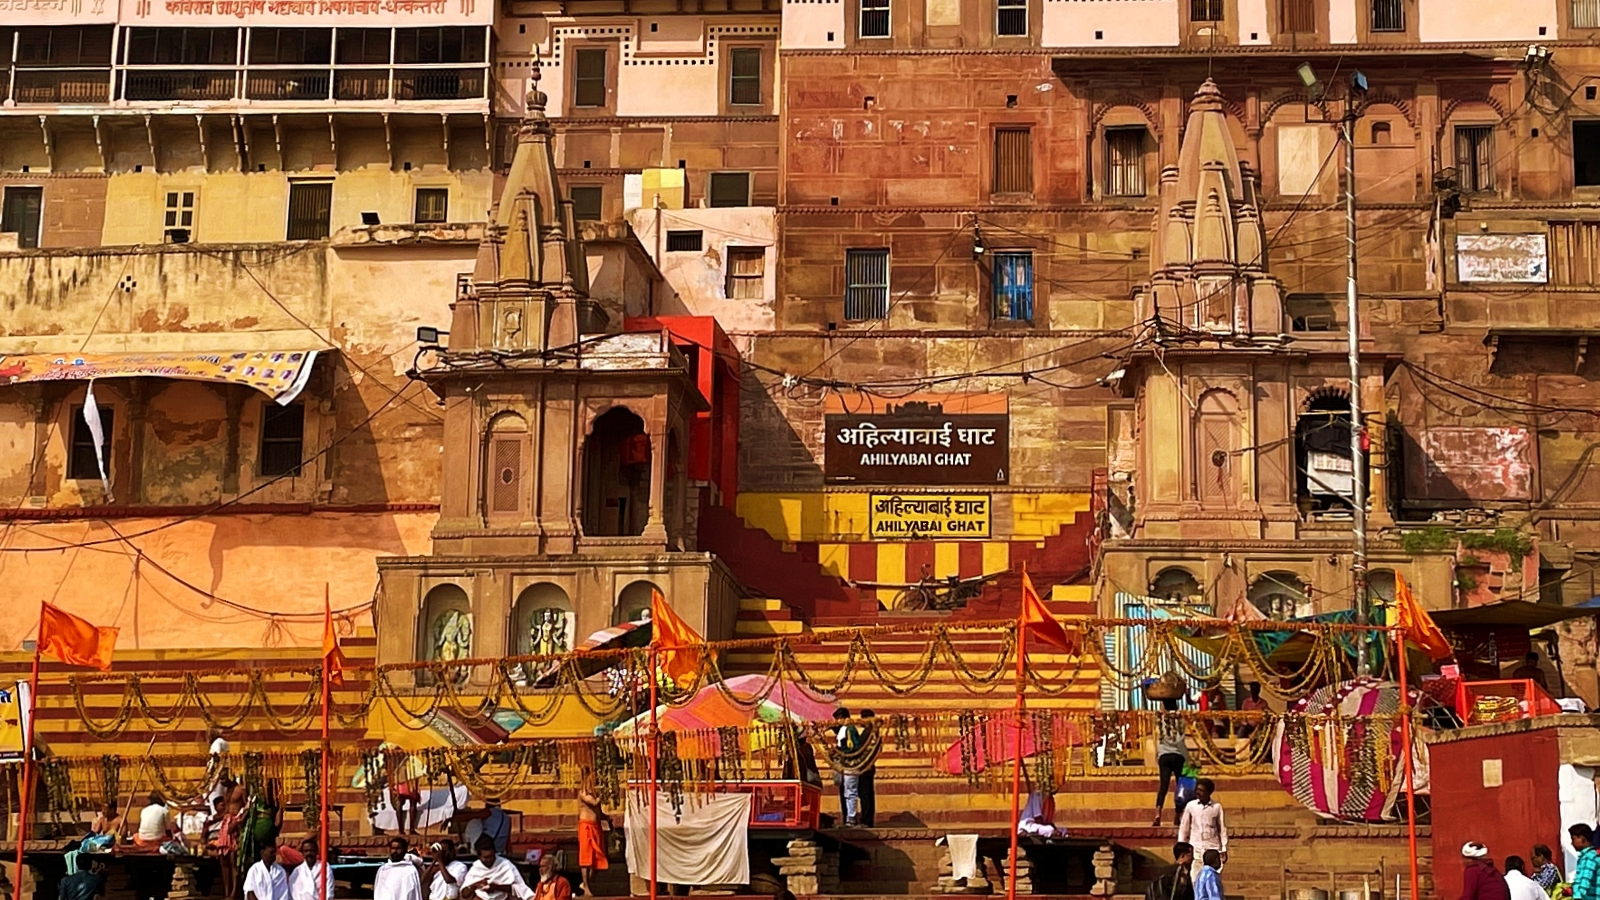 Breathtaking Views Await at Ahilya Bai Ghat in Varanasi